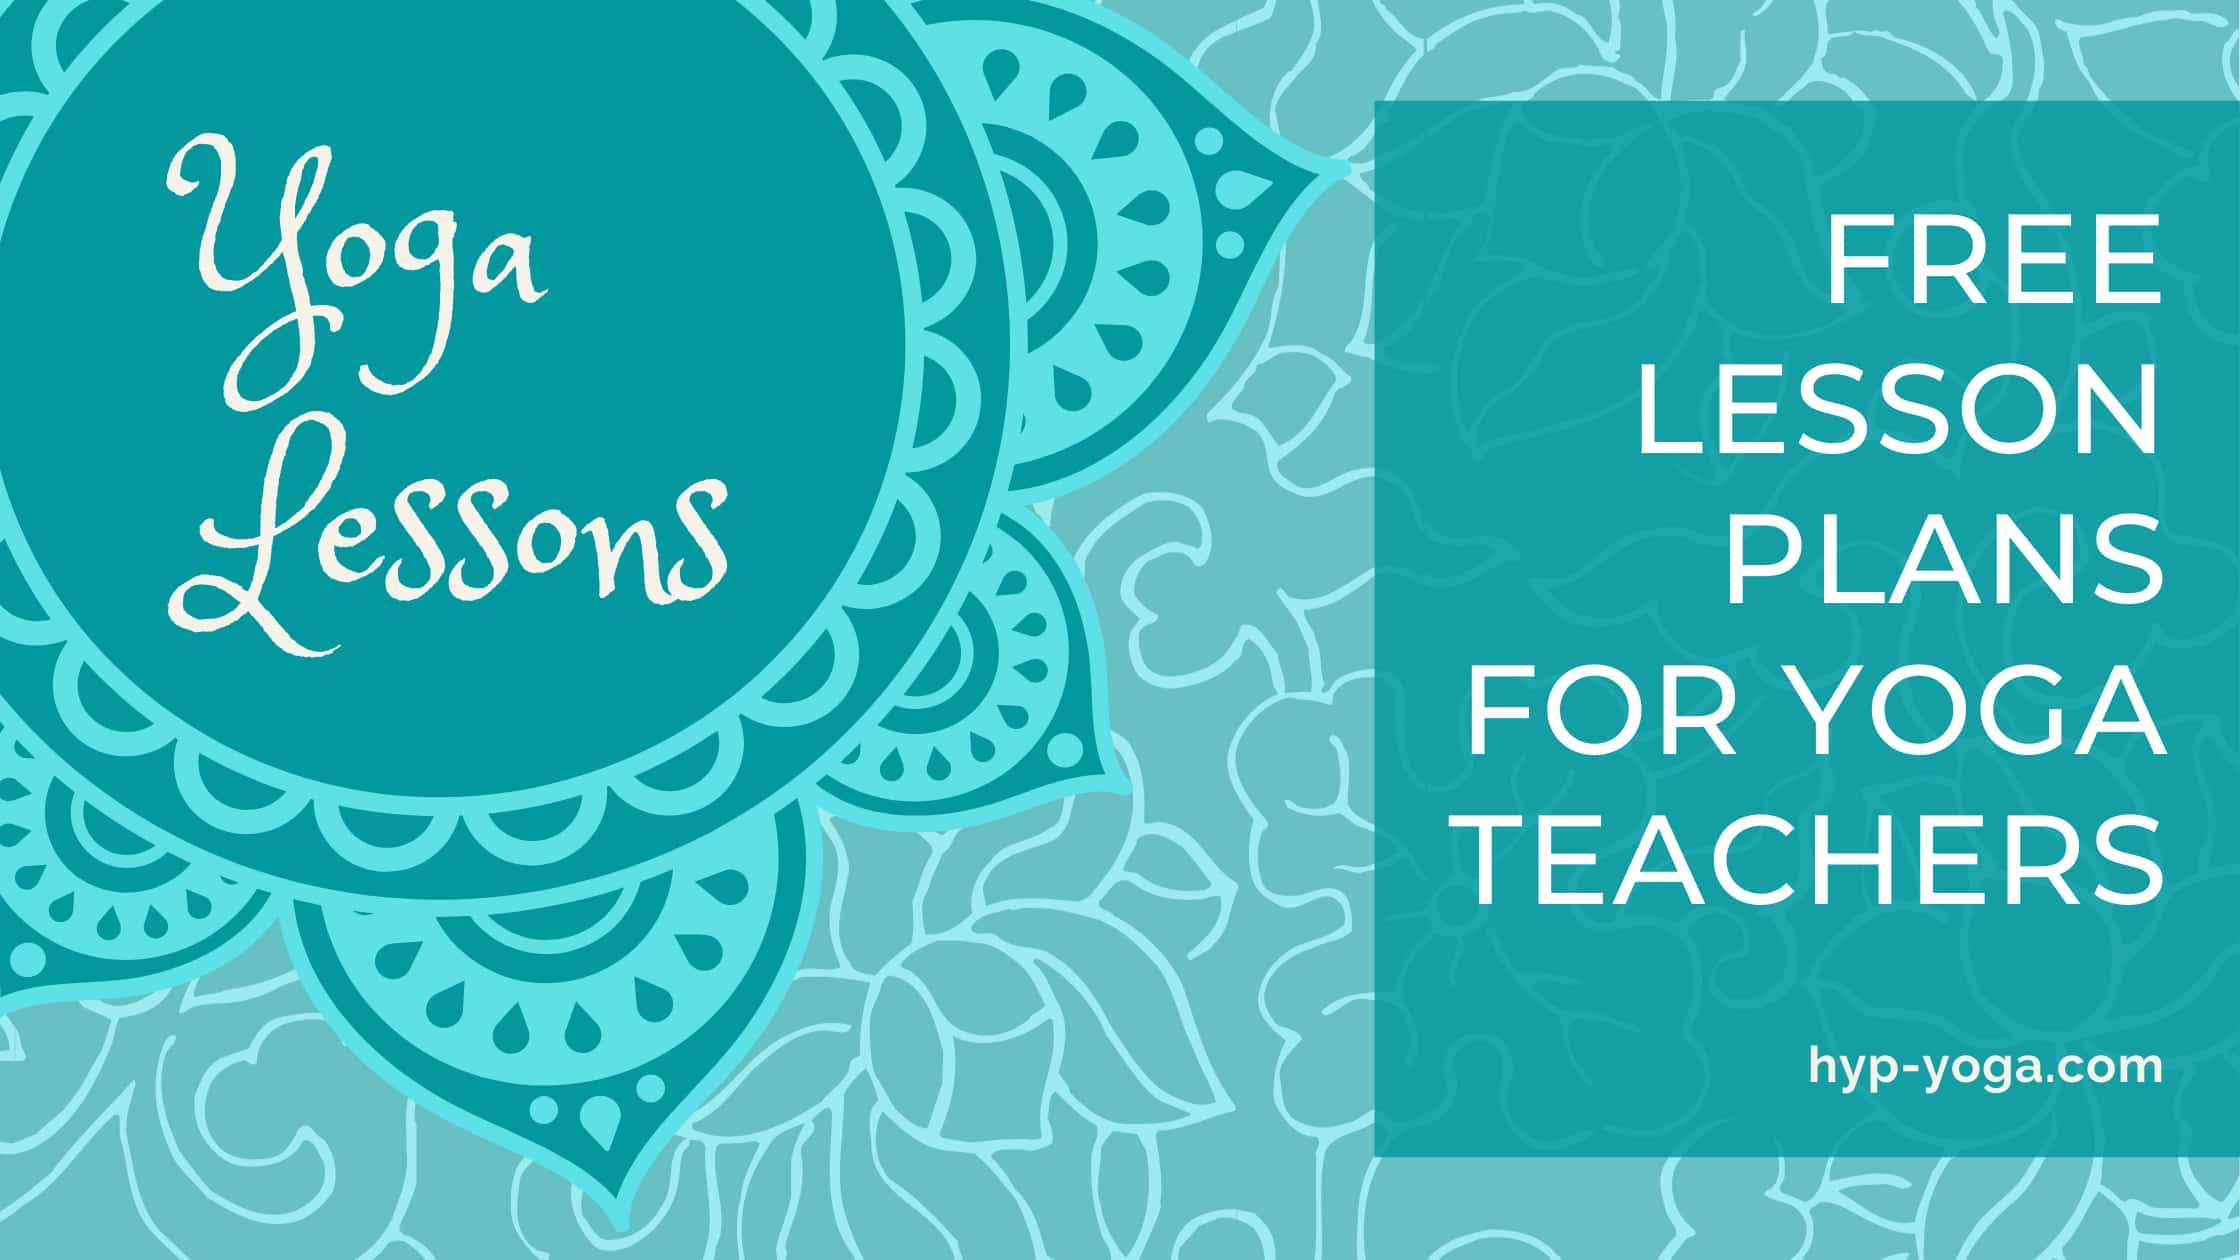 Yoga Class Plans for Teachers (Free Yoga Lesson Plans)